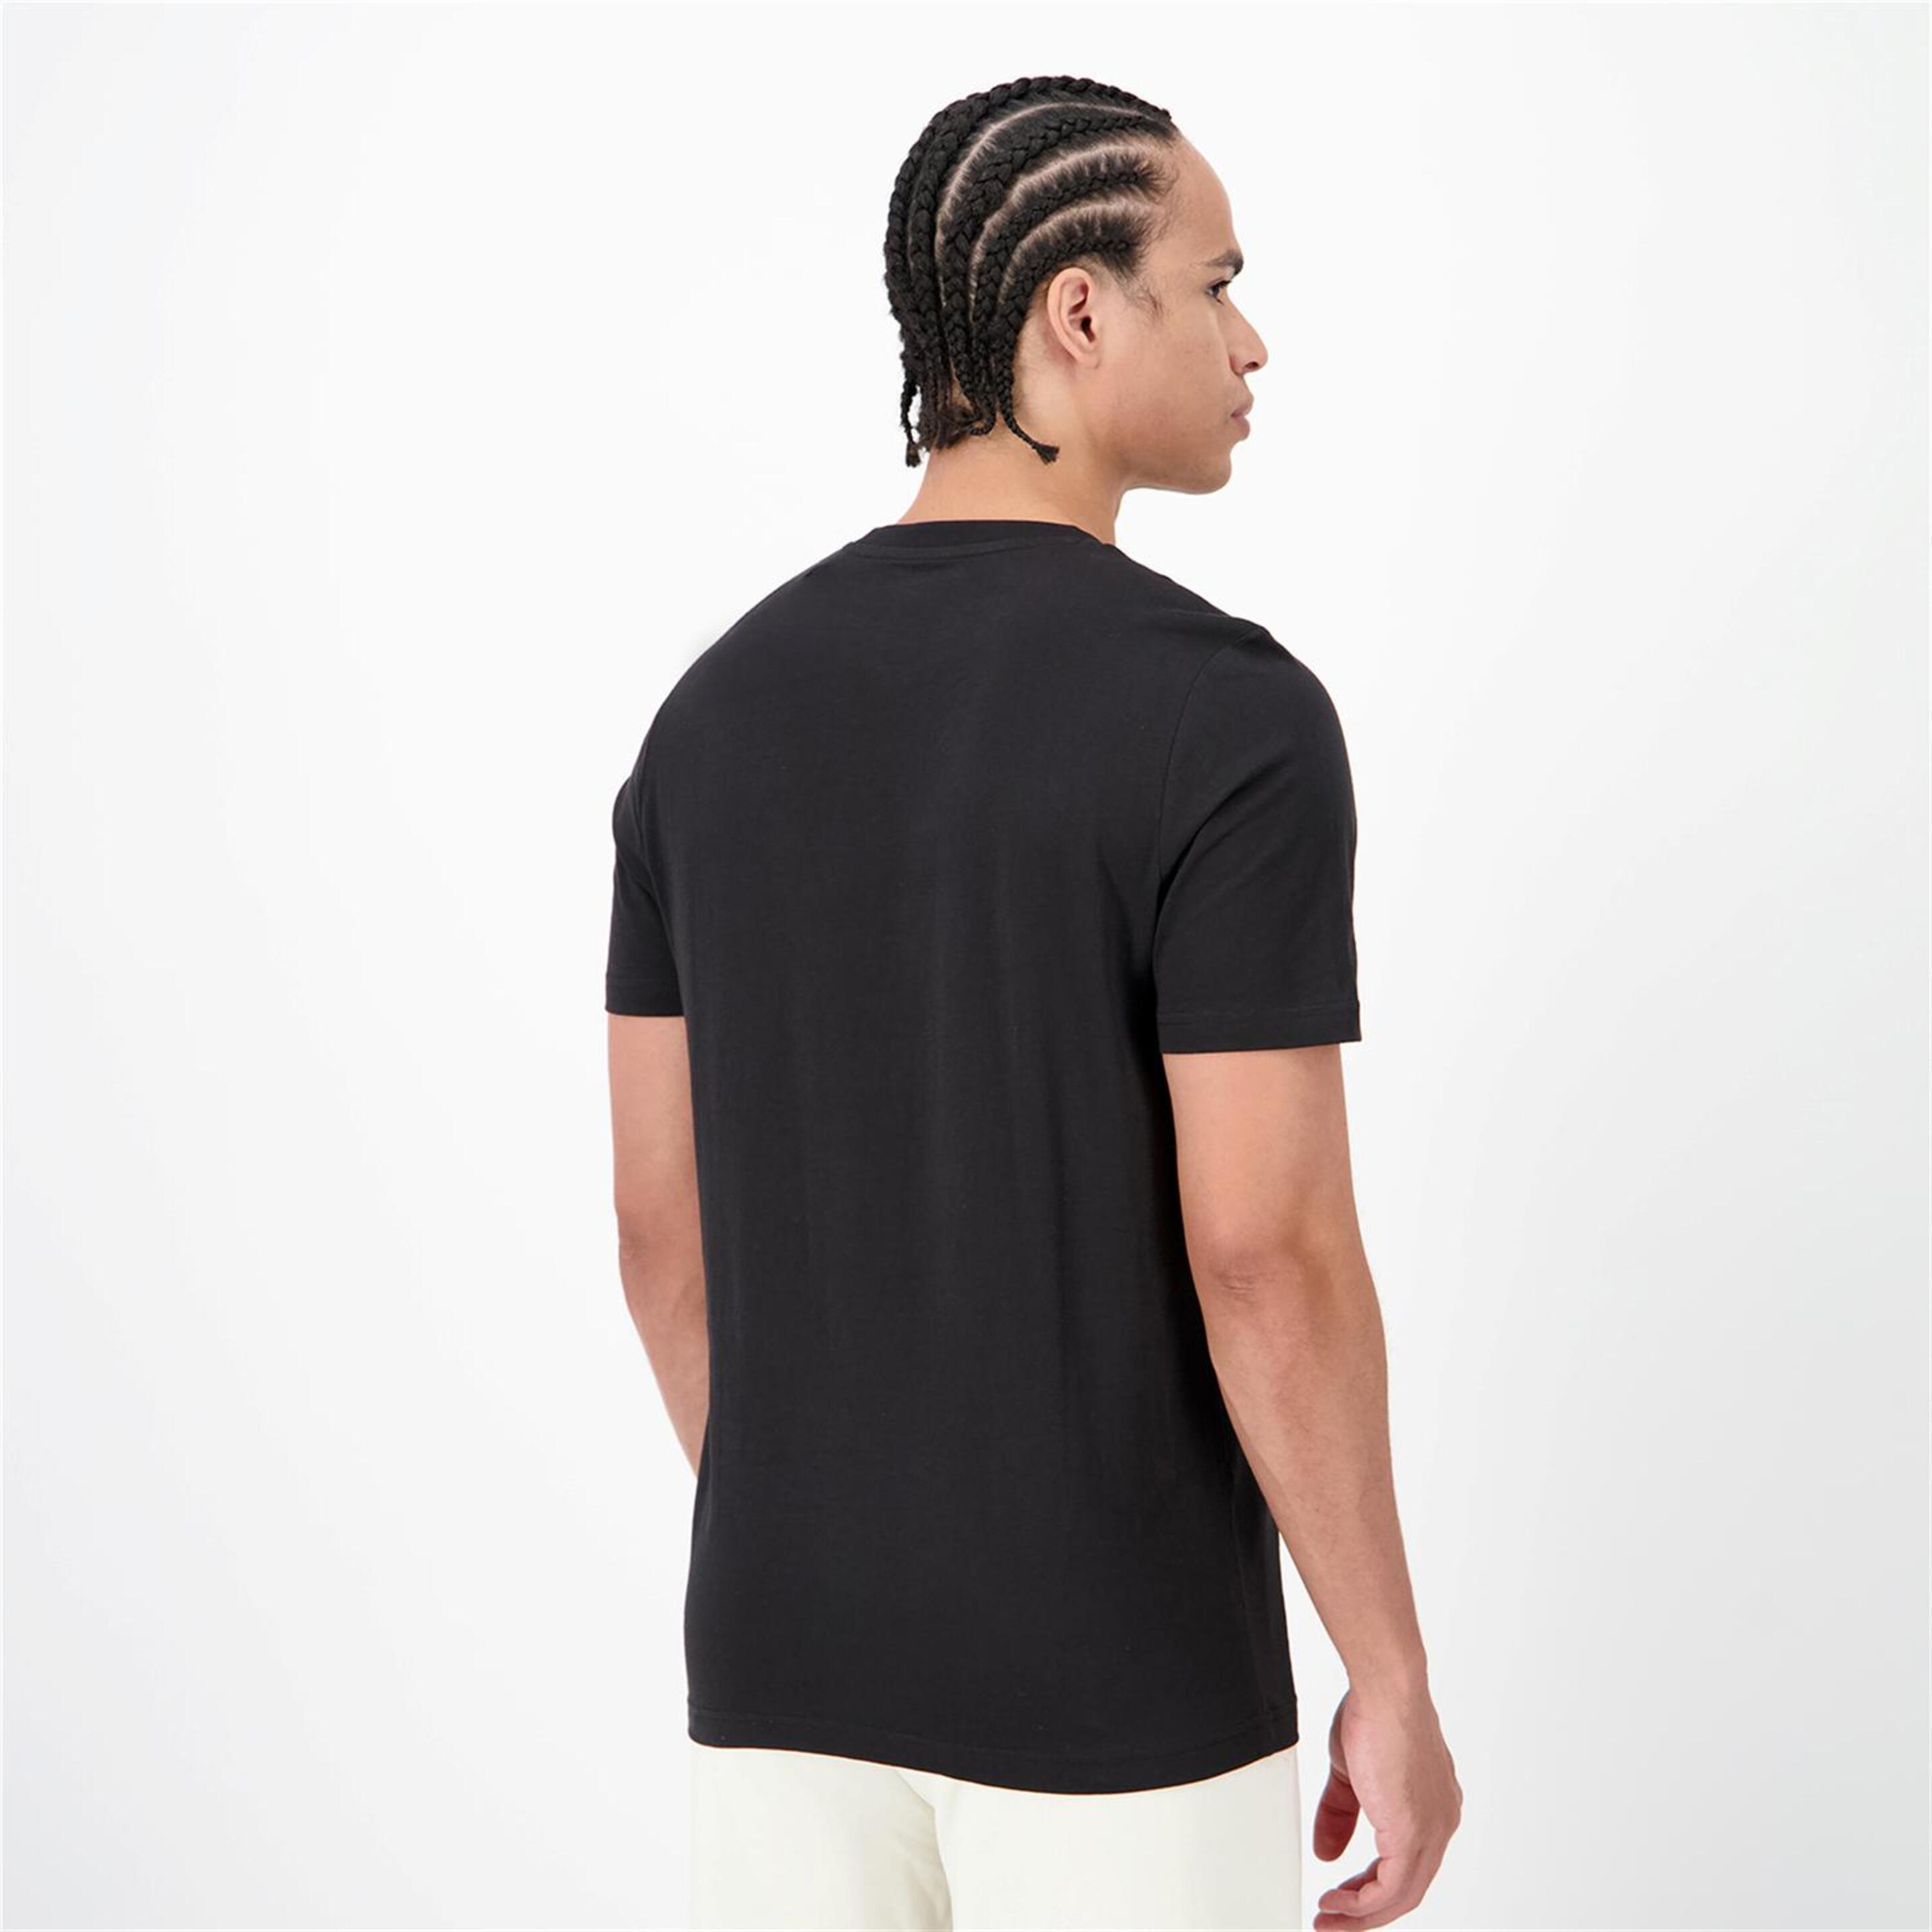 Puma Palm - Negro - Camiseta Hombre